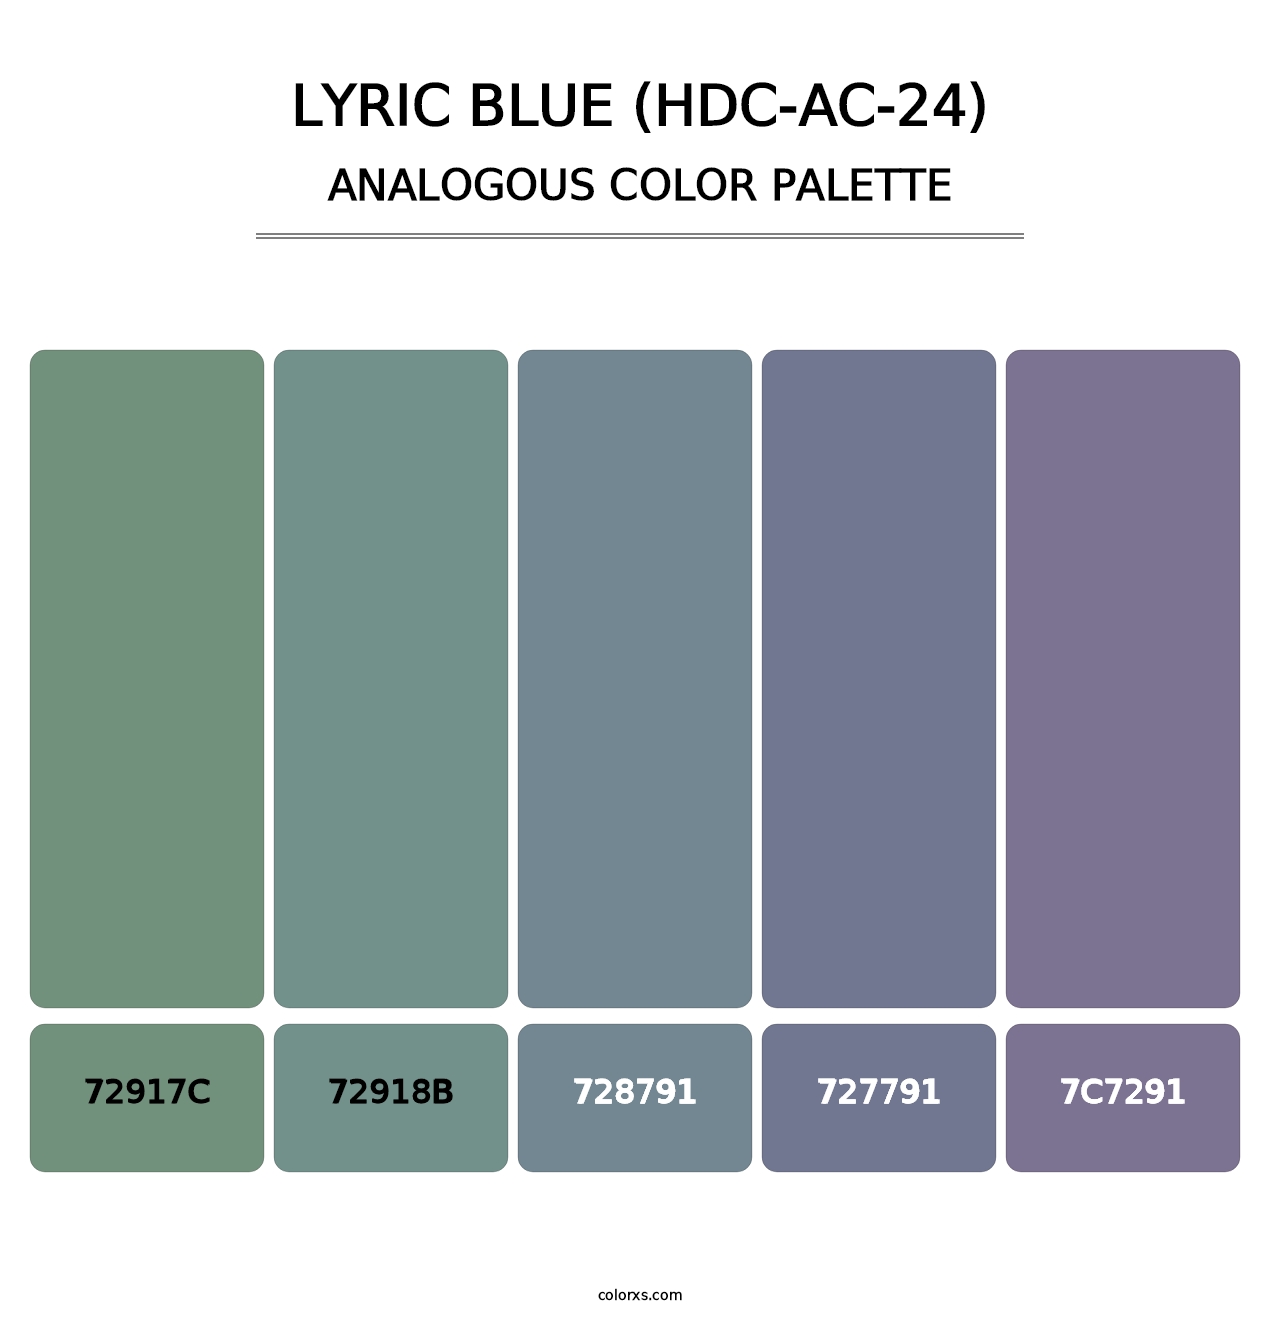 Lyric Blue (HDC-AC-24) - Analogous Color Palette